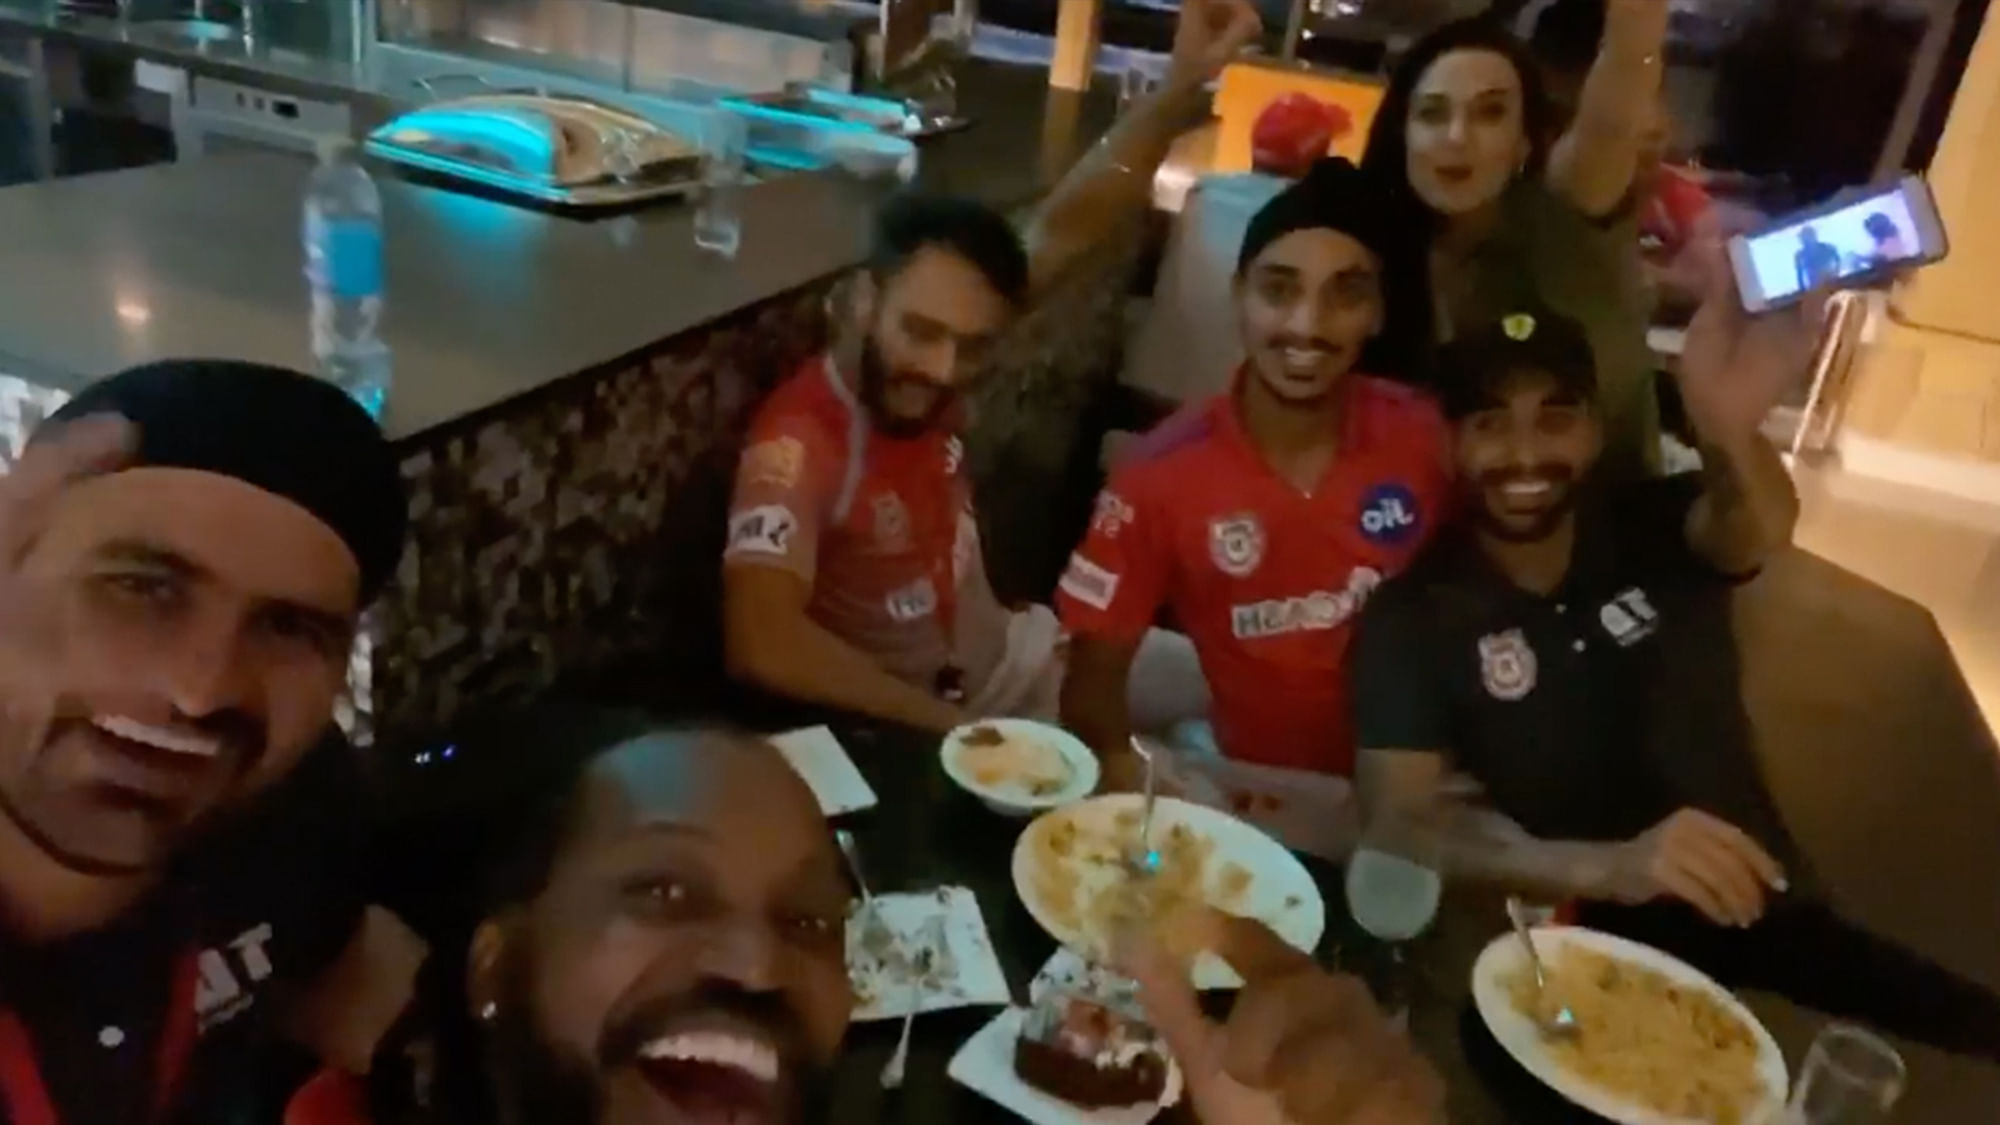 Kings XI Punjab team celebrating Gayle's birthday.